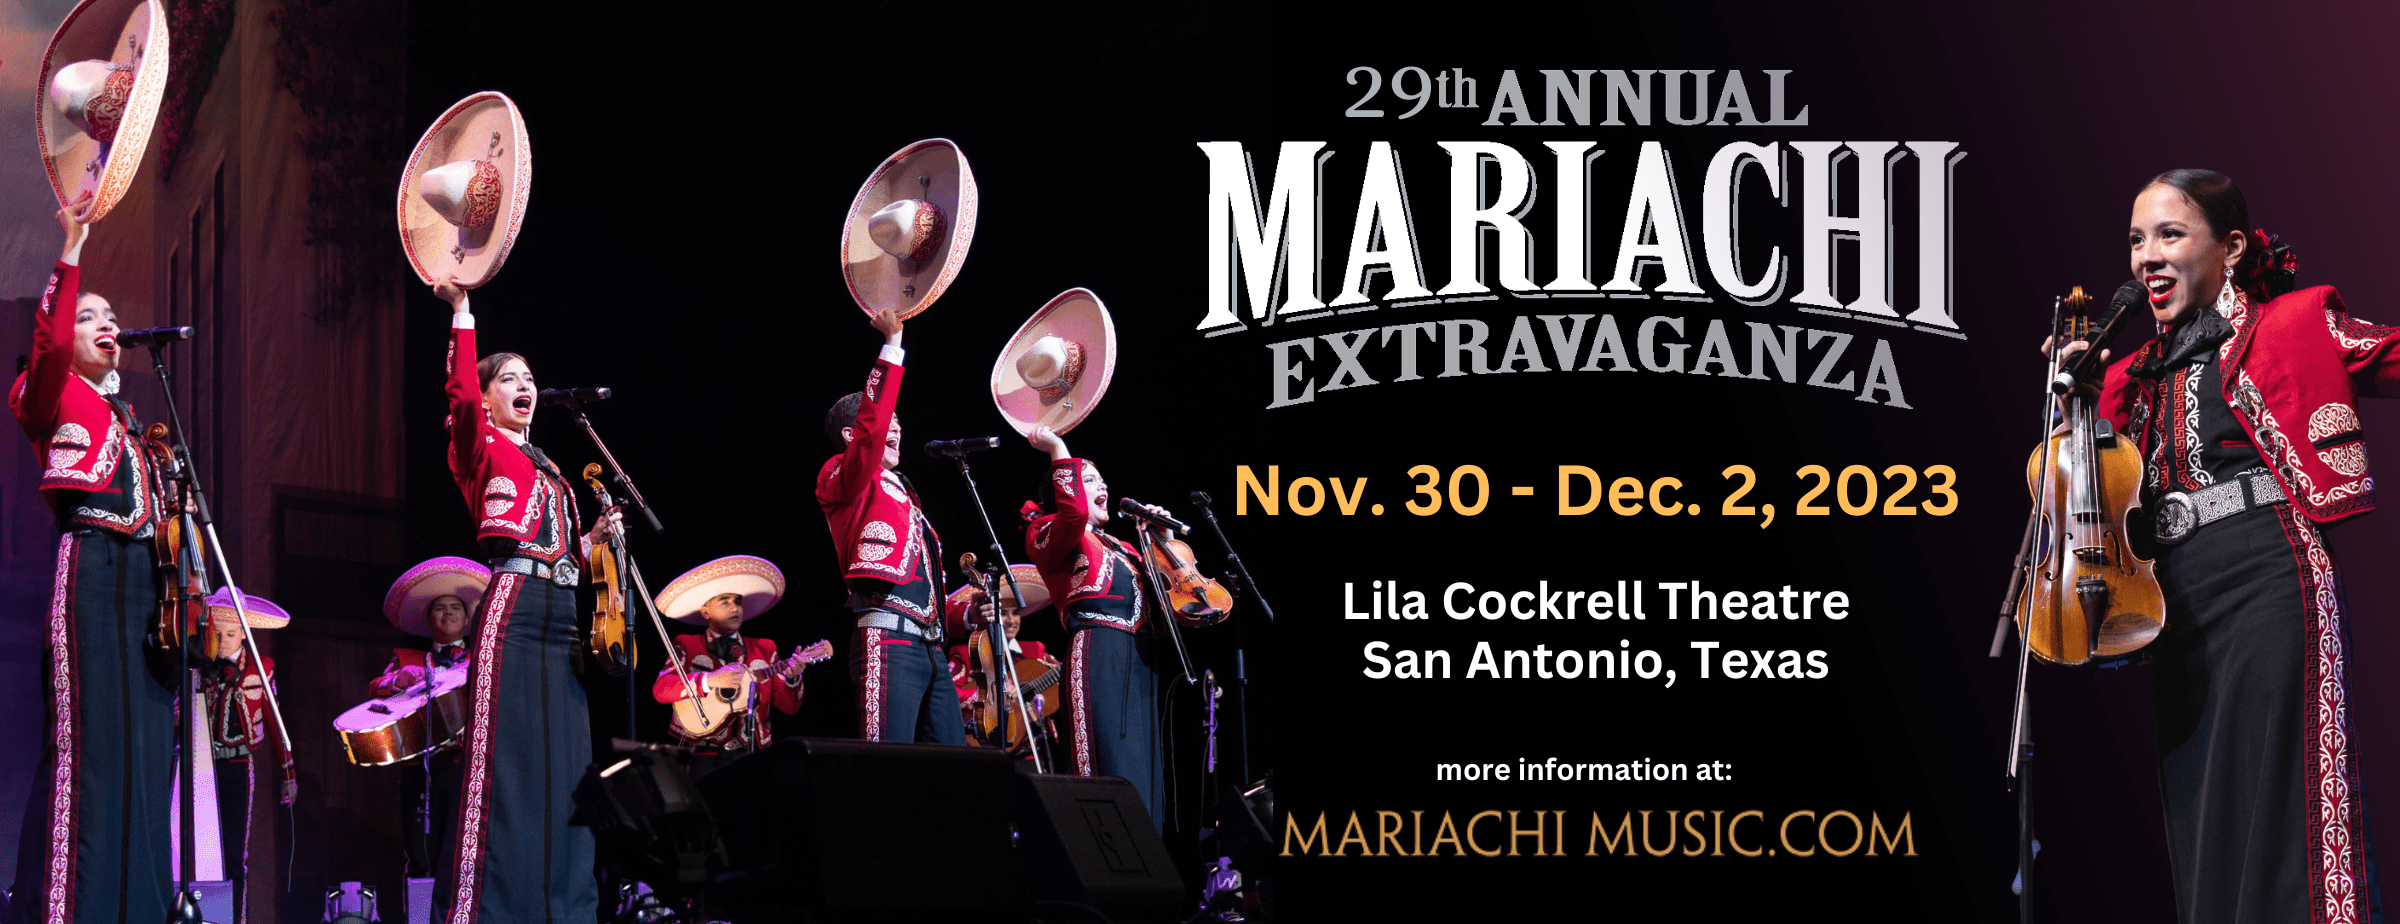 Mariachi Extravaganza Mariachi Music